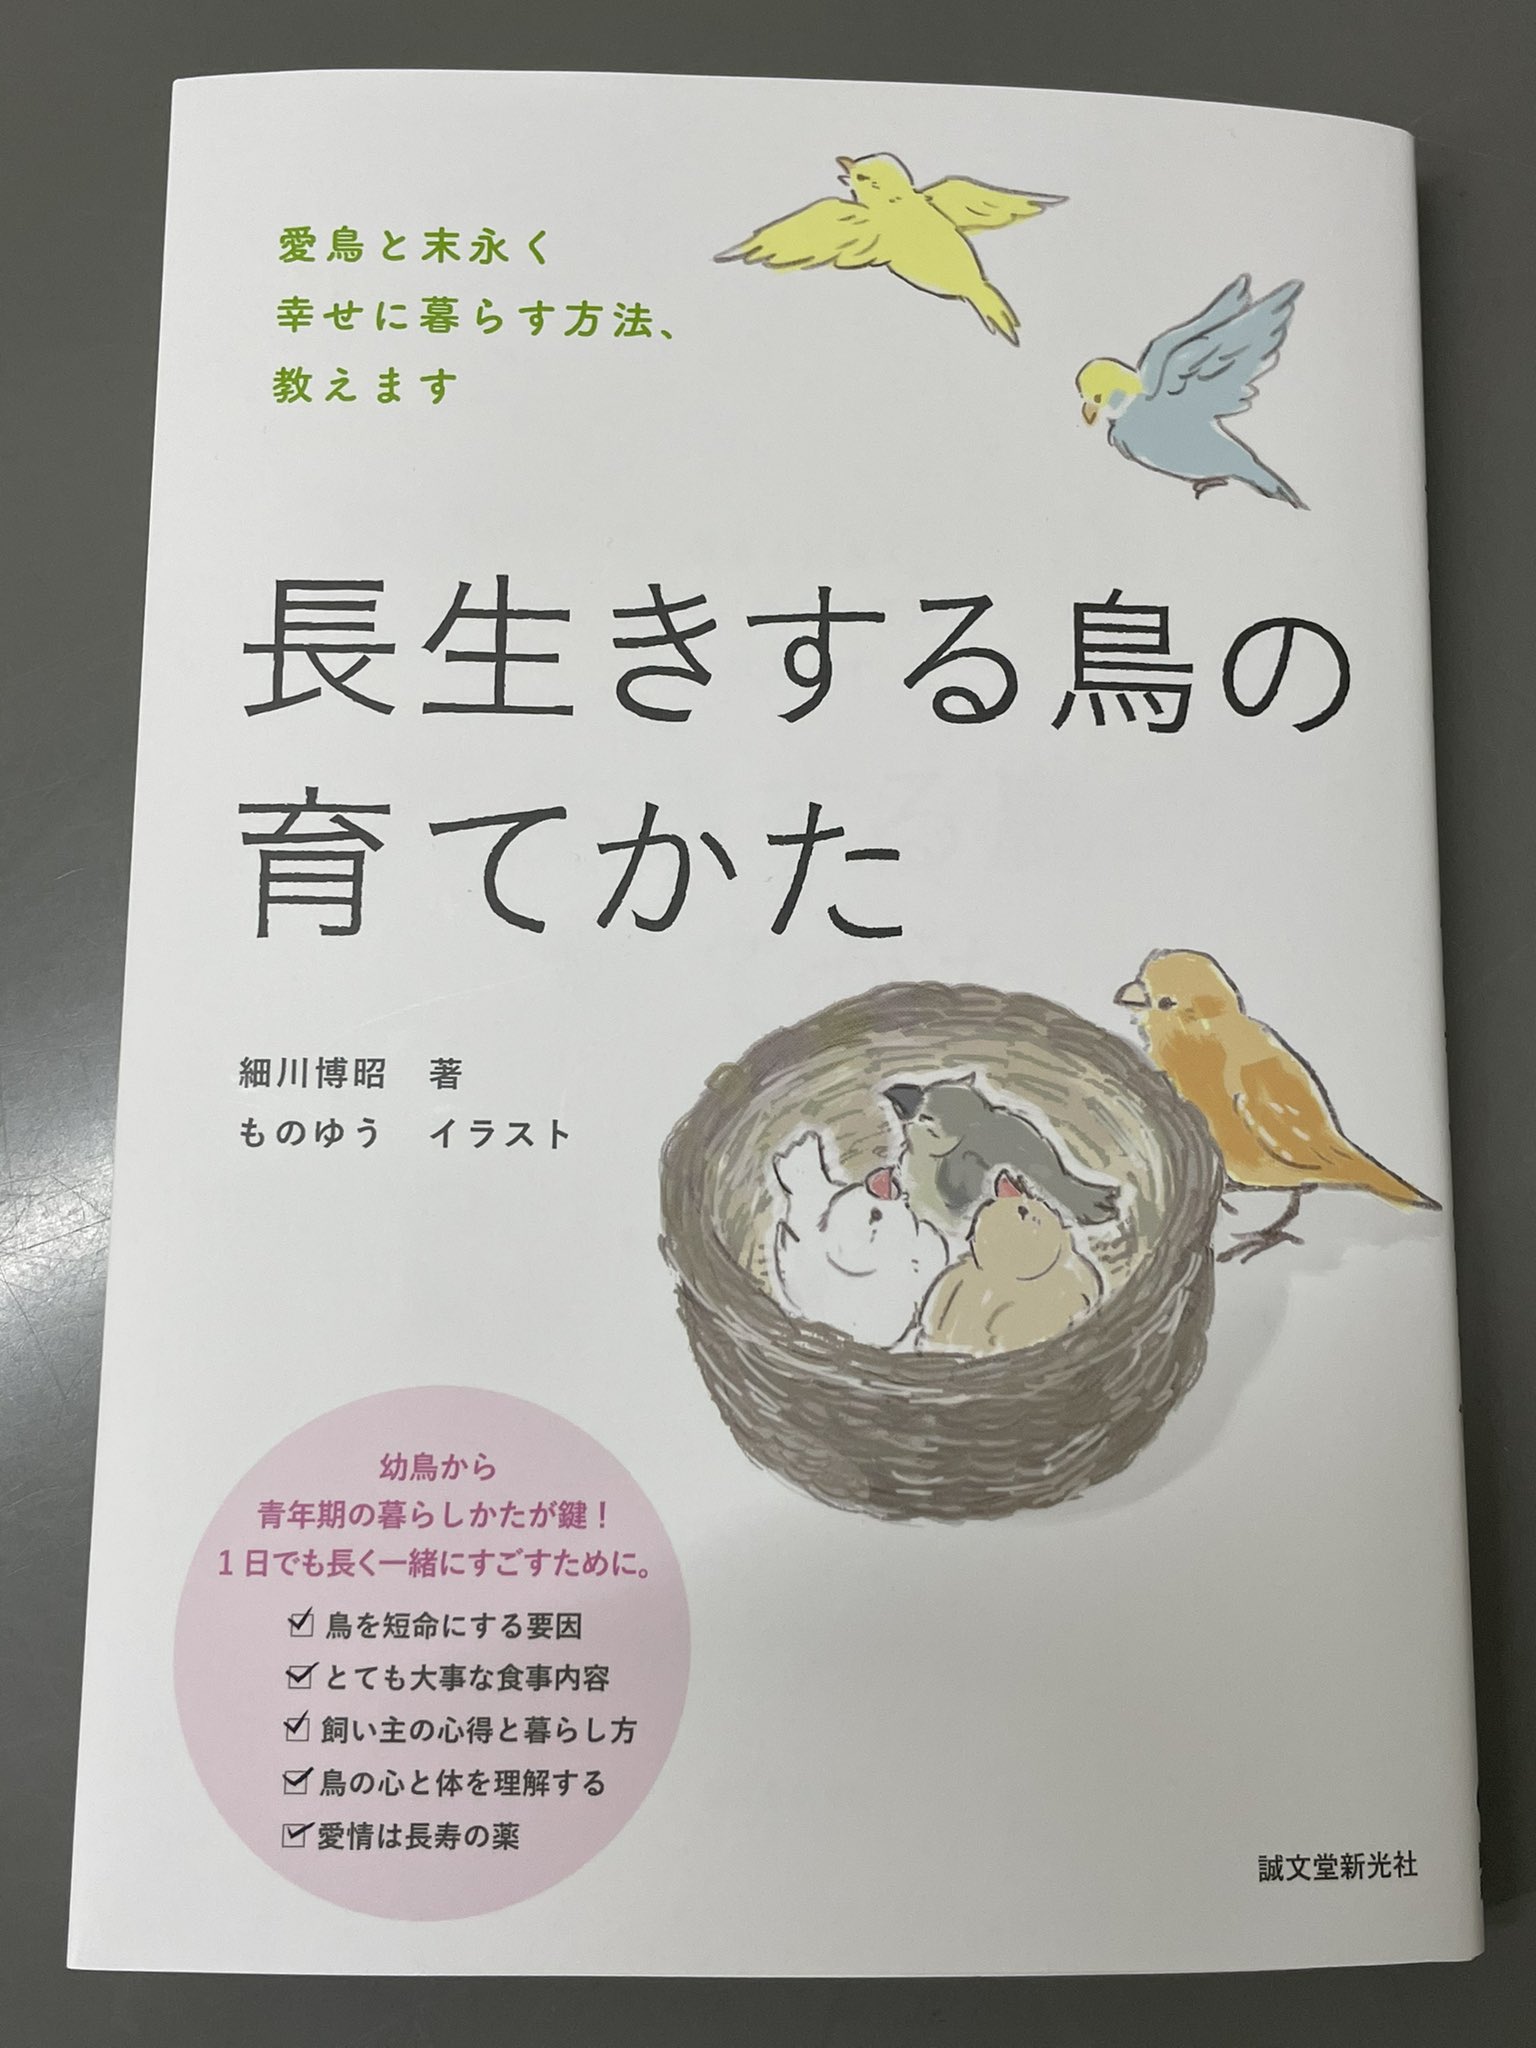 海老沢和荘 細川博昭先生の新しい本 長生きする鳥の育てかた が発刊となります 取材協力しています 共に生活する上での注意点が盛り沢山です ぜひ読んでみてください T Co Msy8dtot3i Twitter